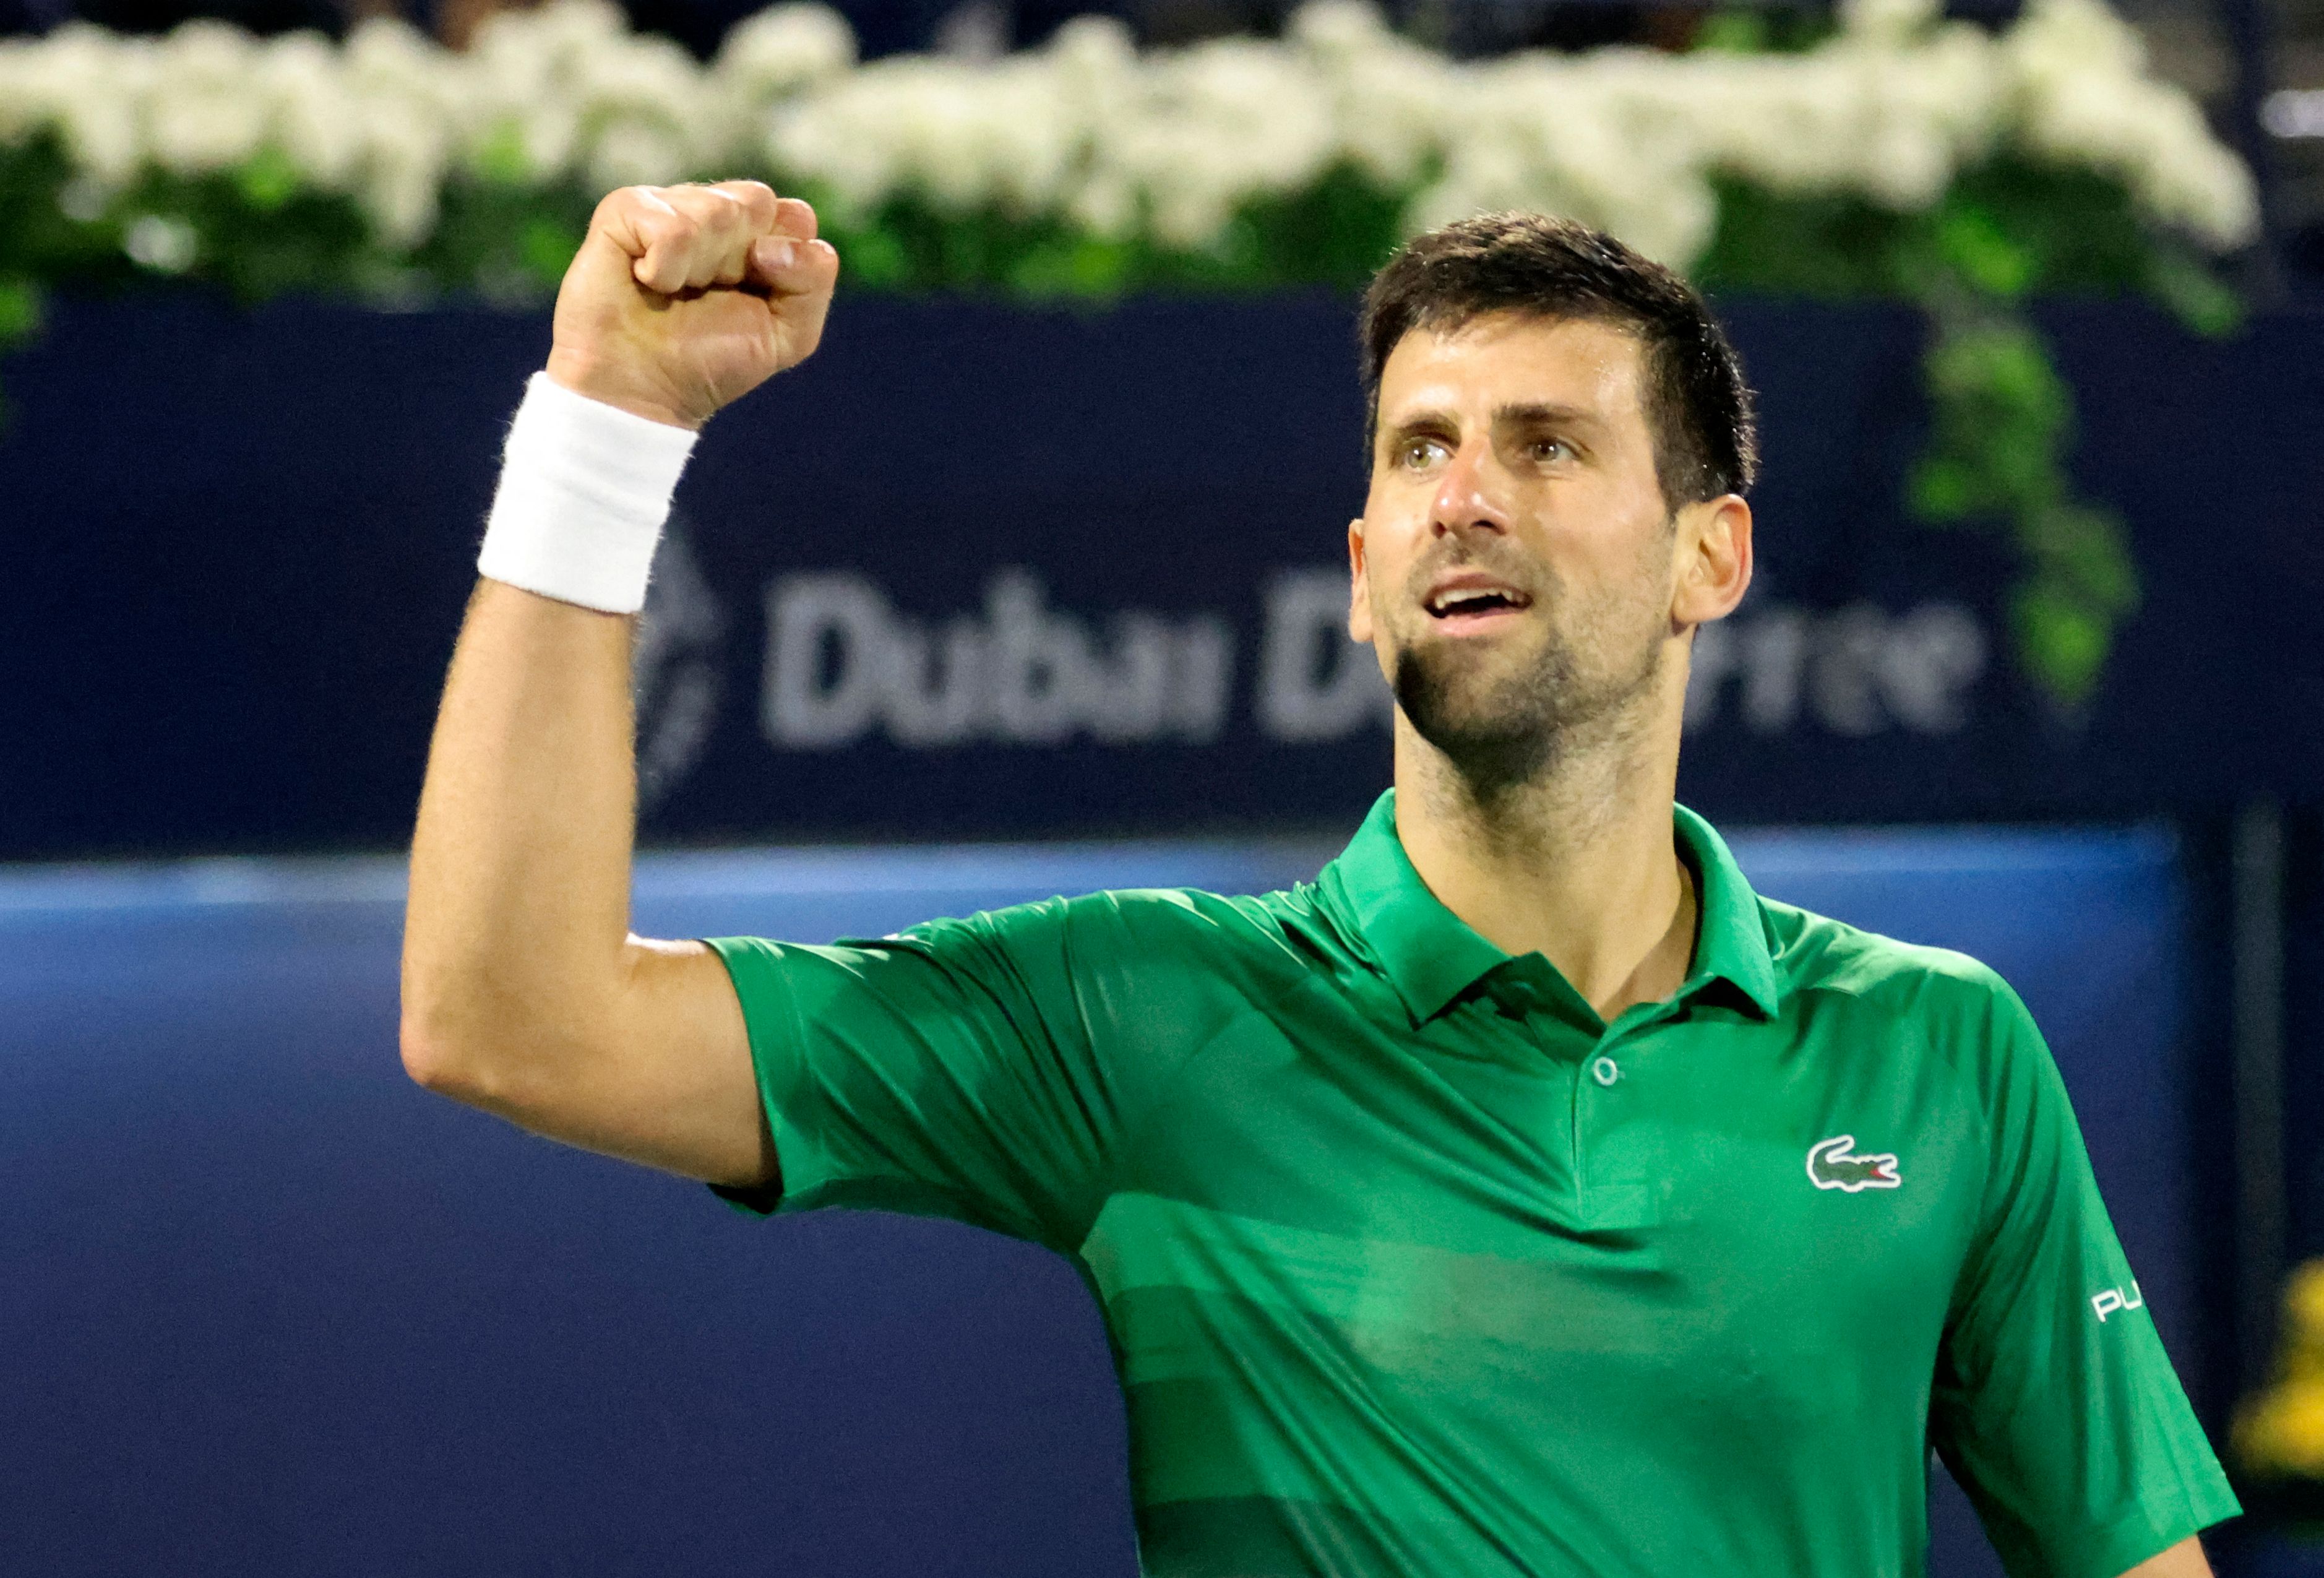 Novak Djokovic's Indian Wells Participation in Limbo Over U.S. Visa Doubts